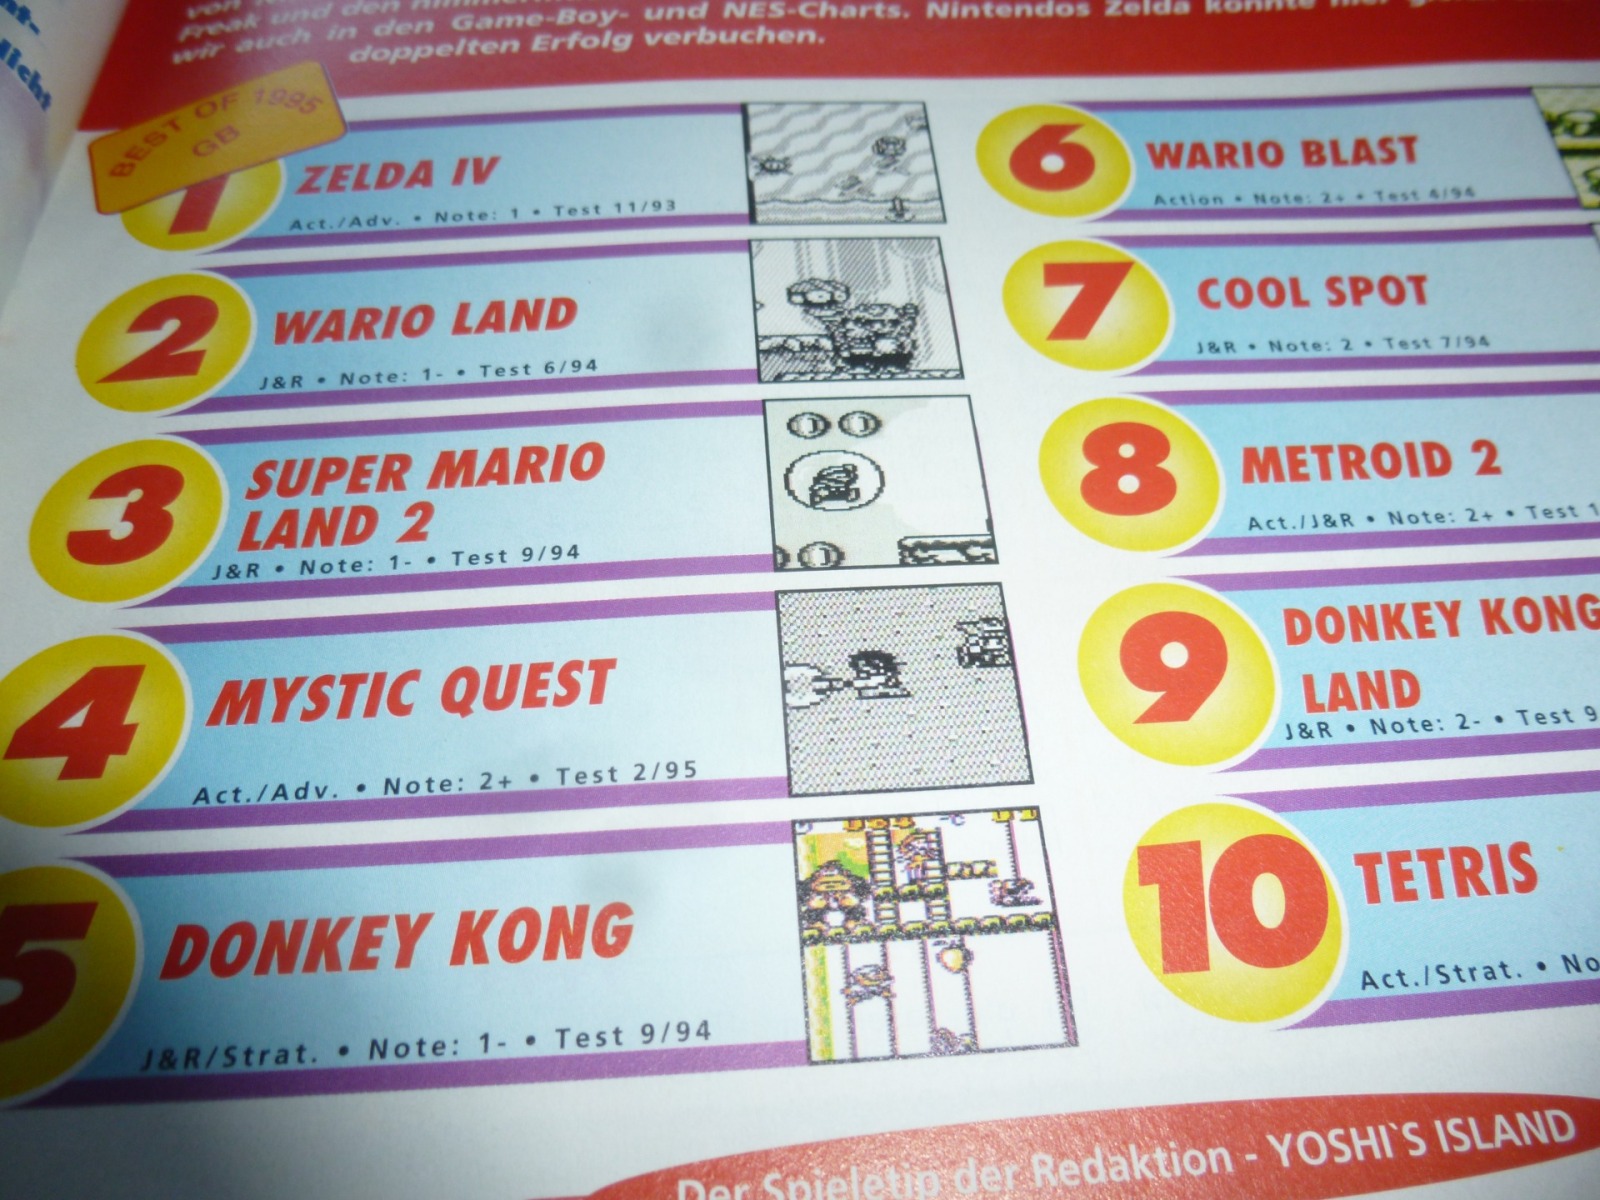 TOTAL Das unabhängige Magazin - 100 Nintendo - Ausgabe 2/96 1996 16